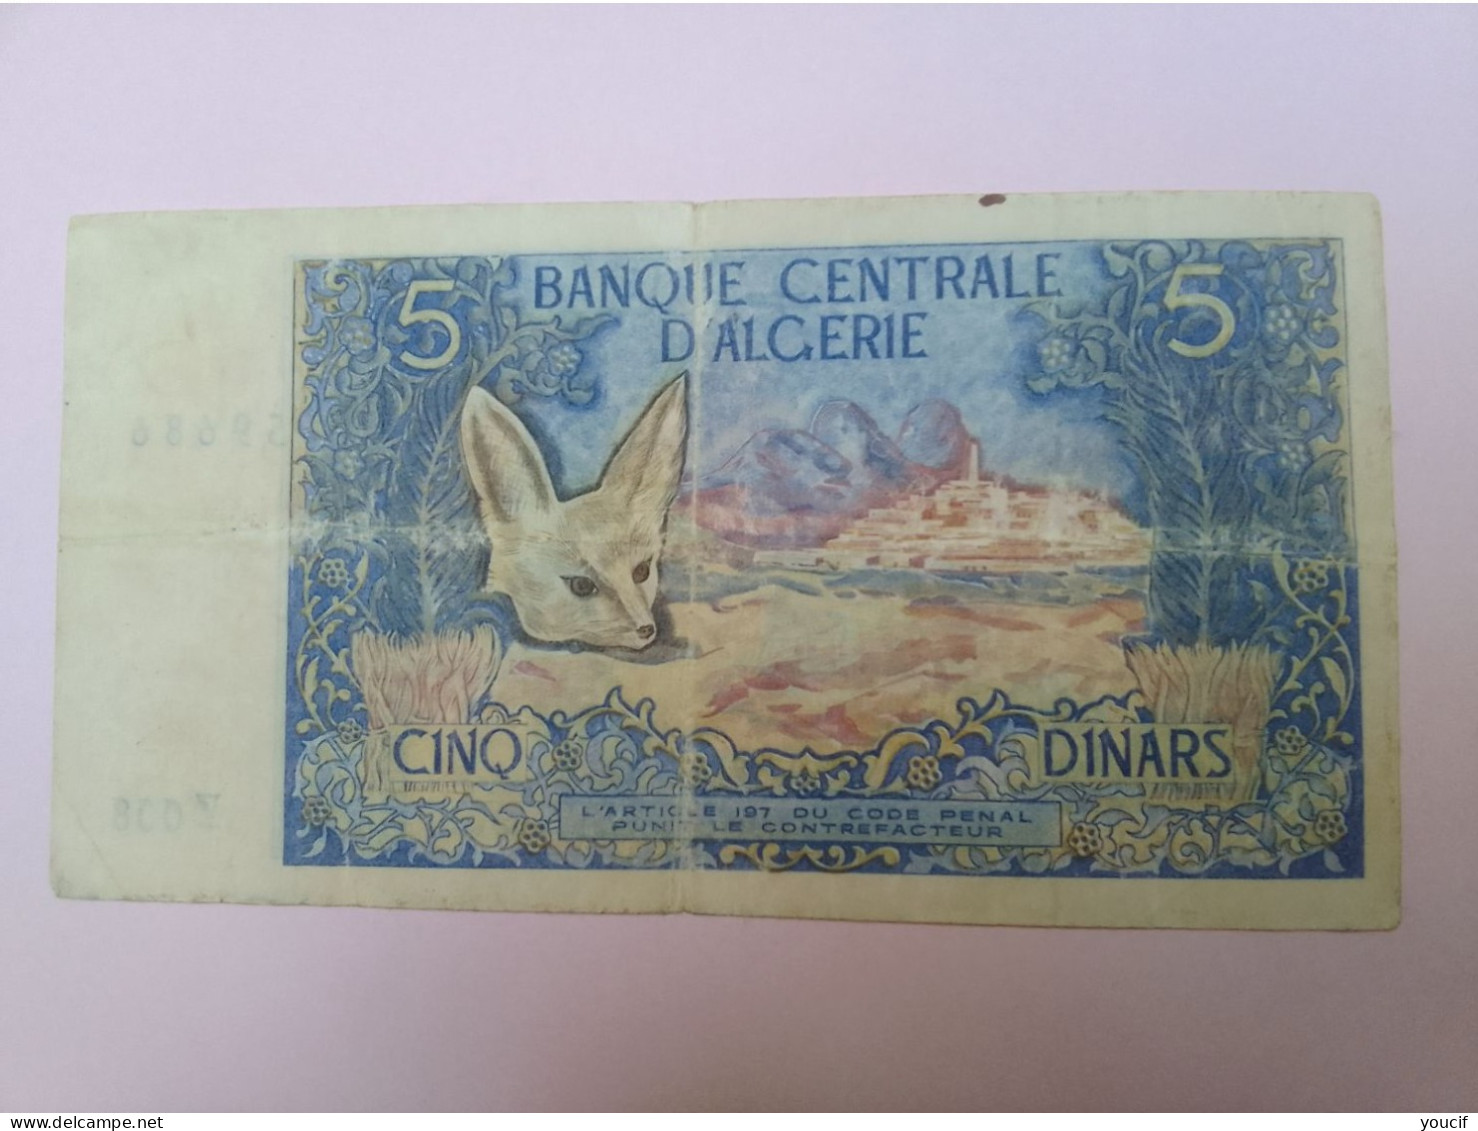 Billet De Banque D Algerie 5 Dinars Du 1 Novembre 1970 - Algérie